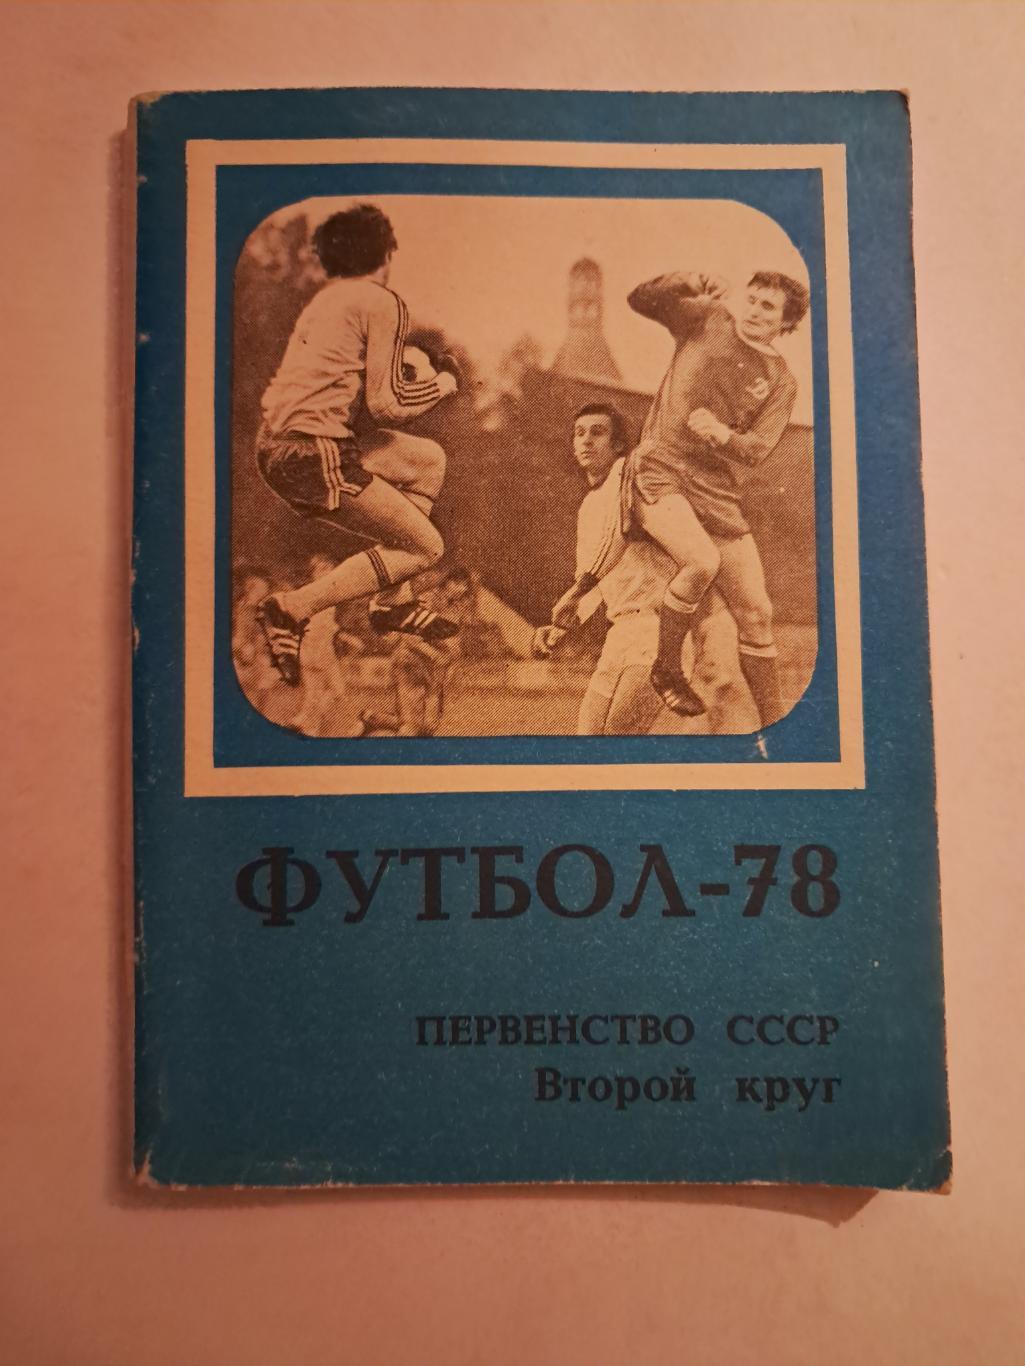 Календарь-справочник по футболу 1978 Москва.